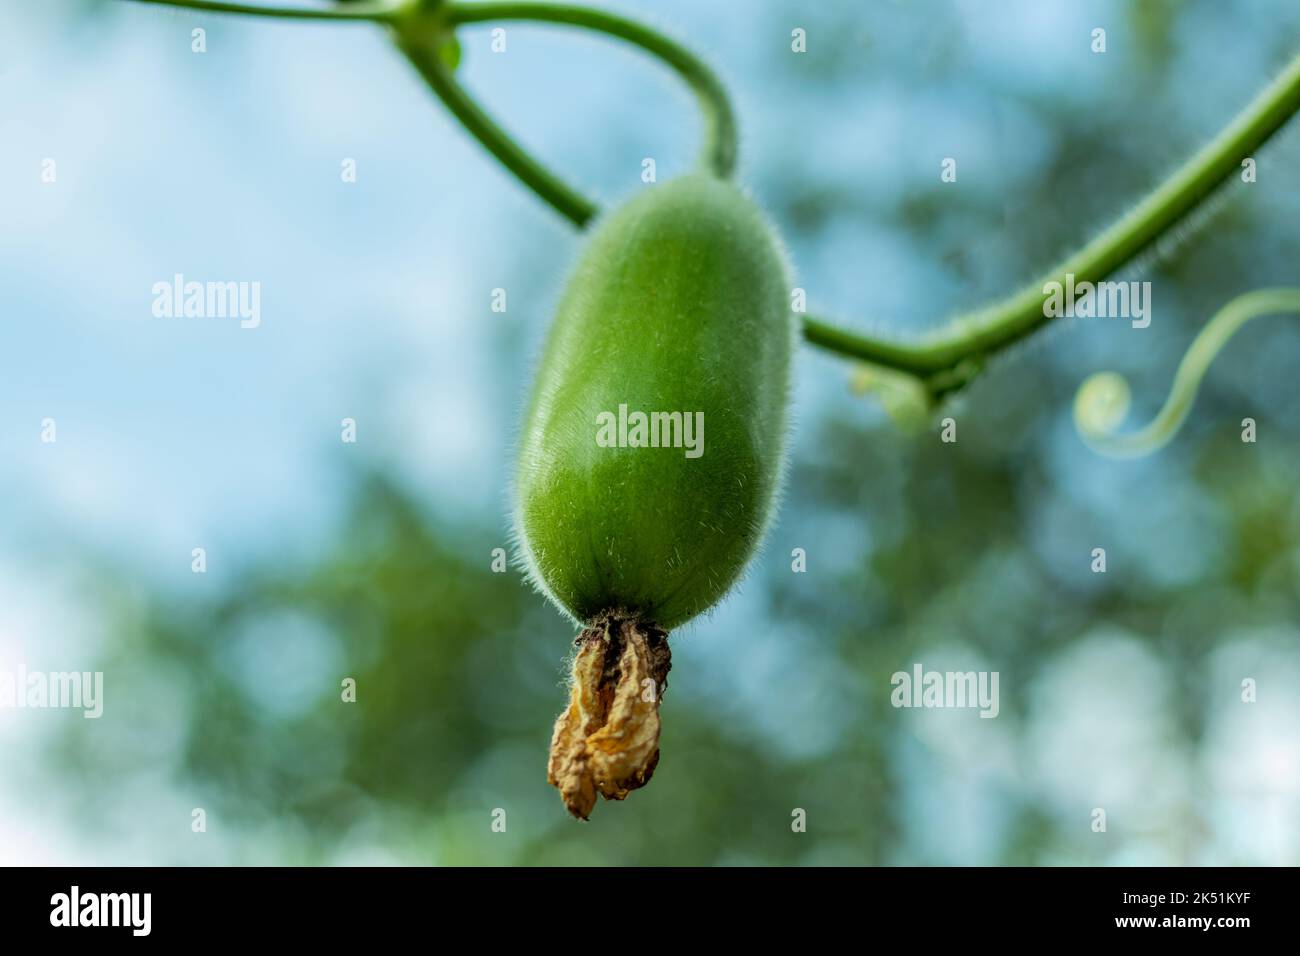 Zucca di cera o Chalkumra di vegetale subcontinente indiano. Il frutto della zucca di cera ha la pelle verde ricoperta da un rivestimento ceroso bianco. Foto Stock